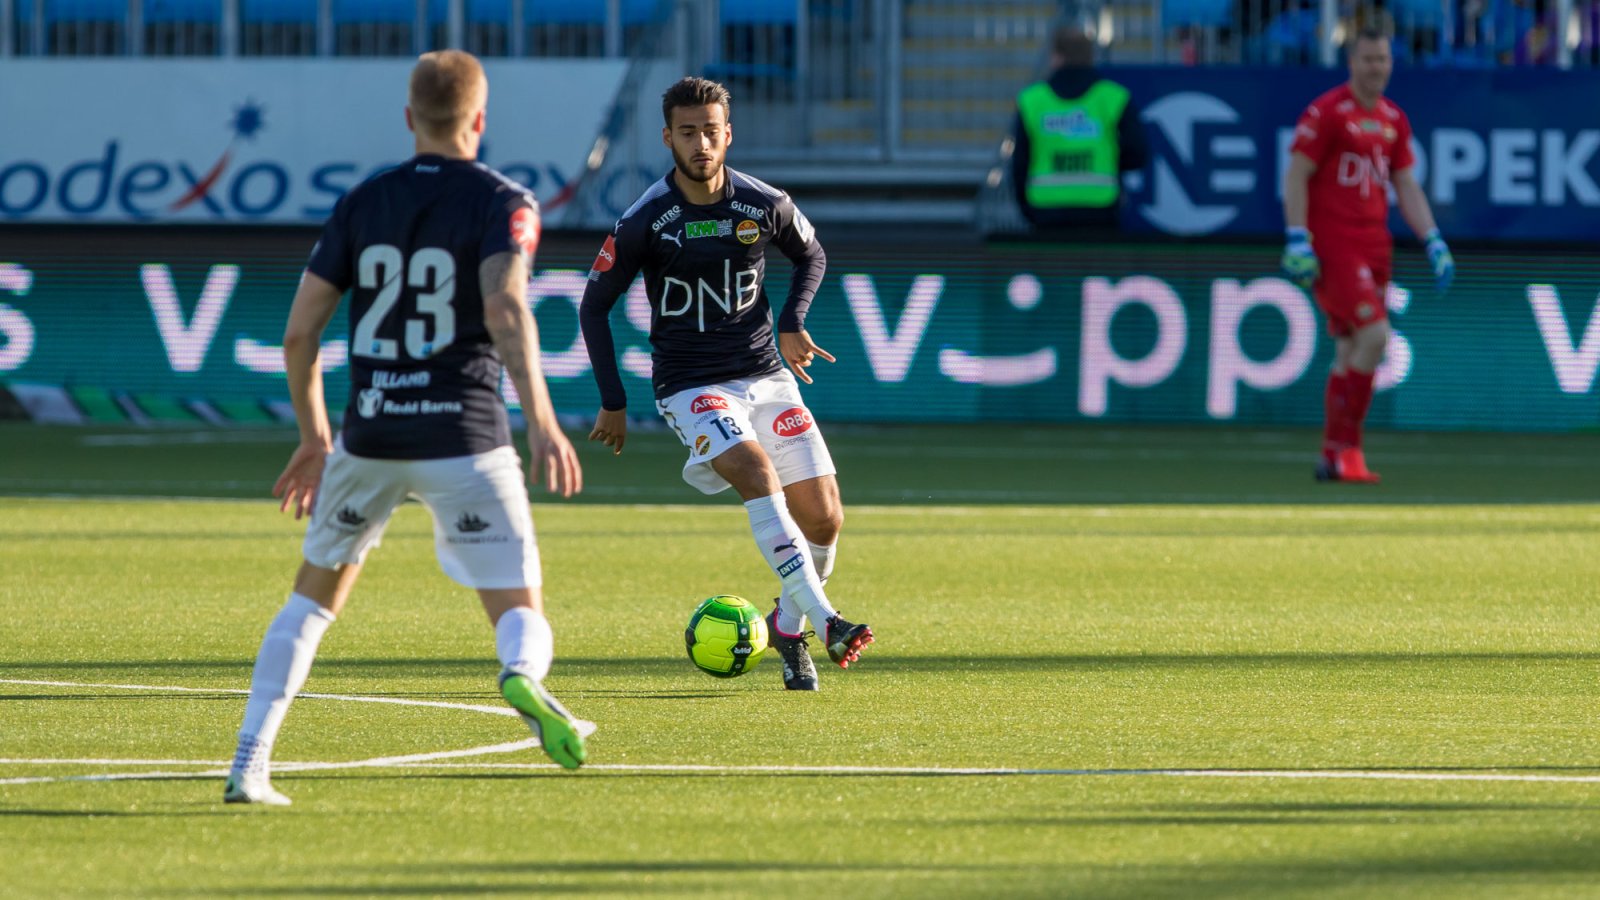 Christian Rubio Sivodedov fikk sin debut i Eliteserien mot Sarpsborg 08 i dag.